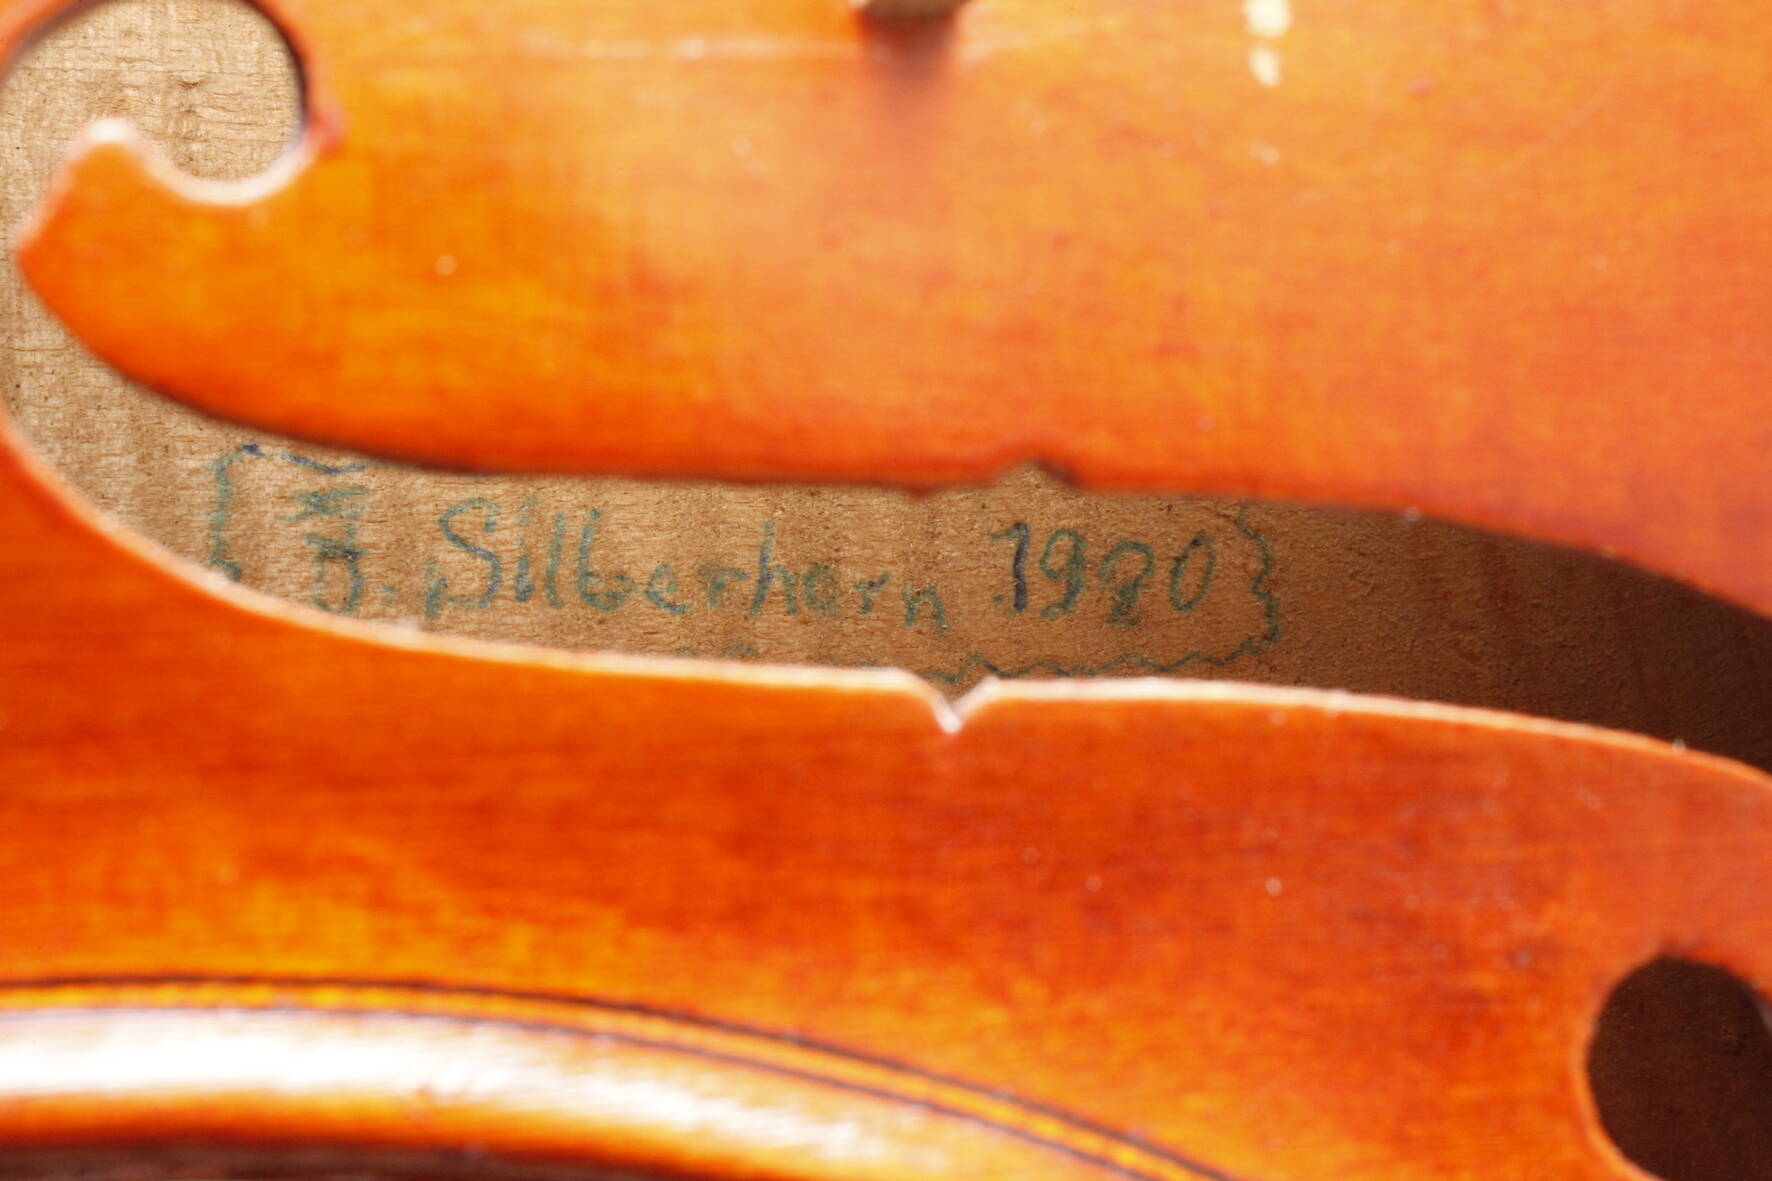 ViolineBodeninnenseite handschriftl. bez. J. Silberhorn 1990, geteilter, sehr gleichmäßig geflammter - Image 7 of 7